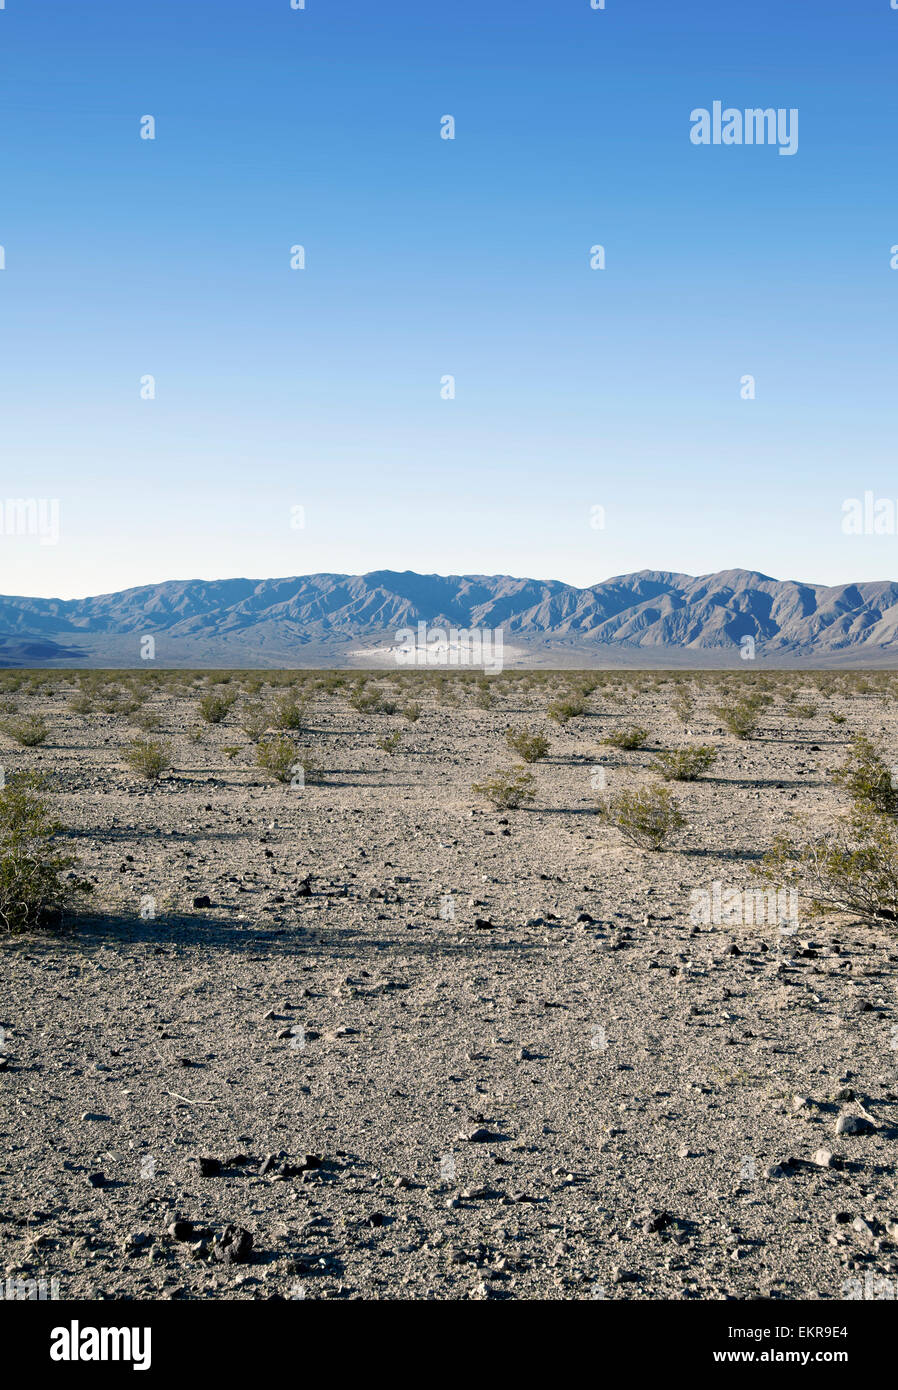 La sécheresse dans la vallée de la mort, Californie, 2012 Banque D'Images